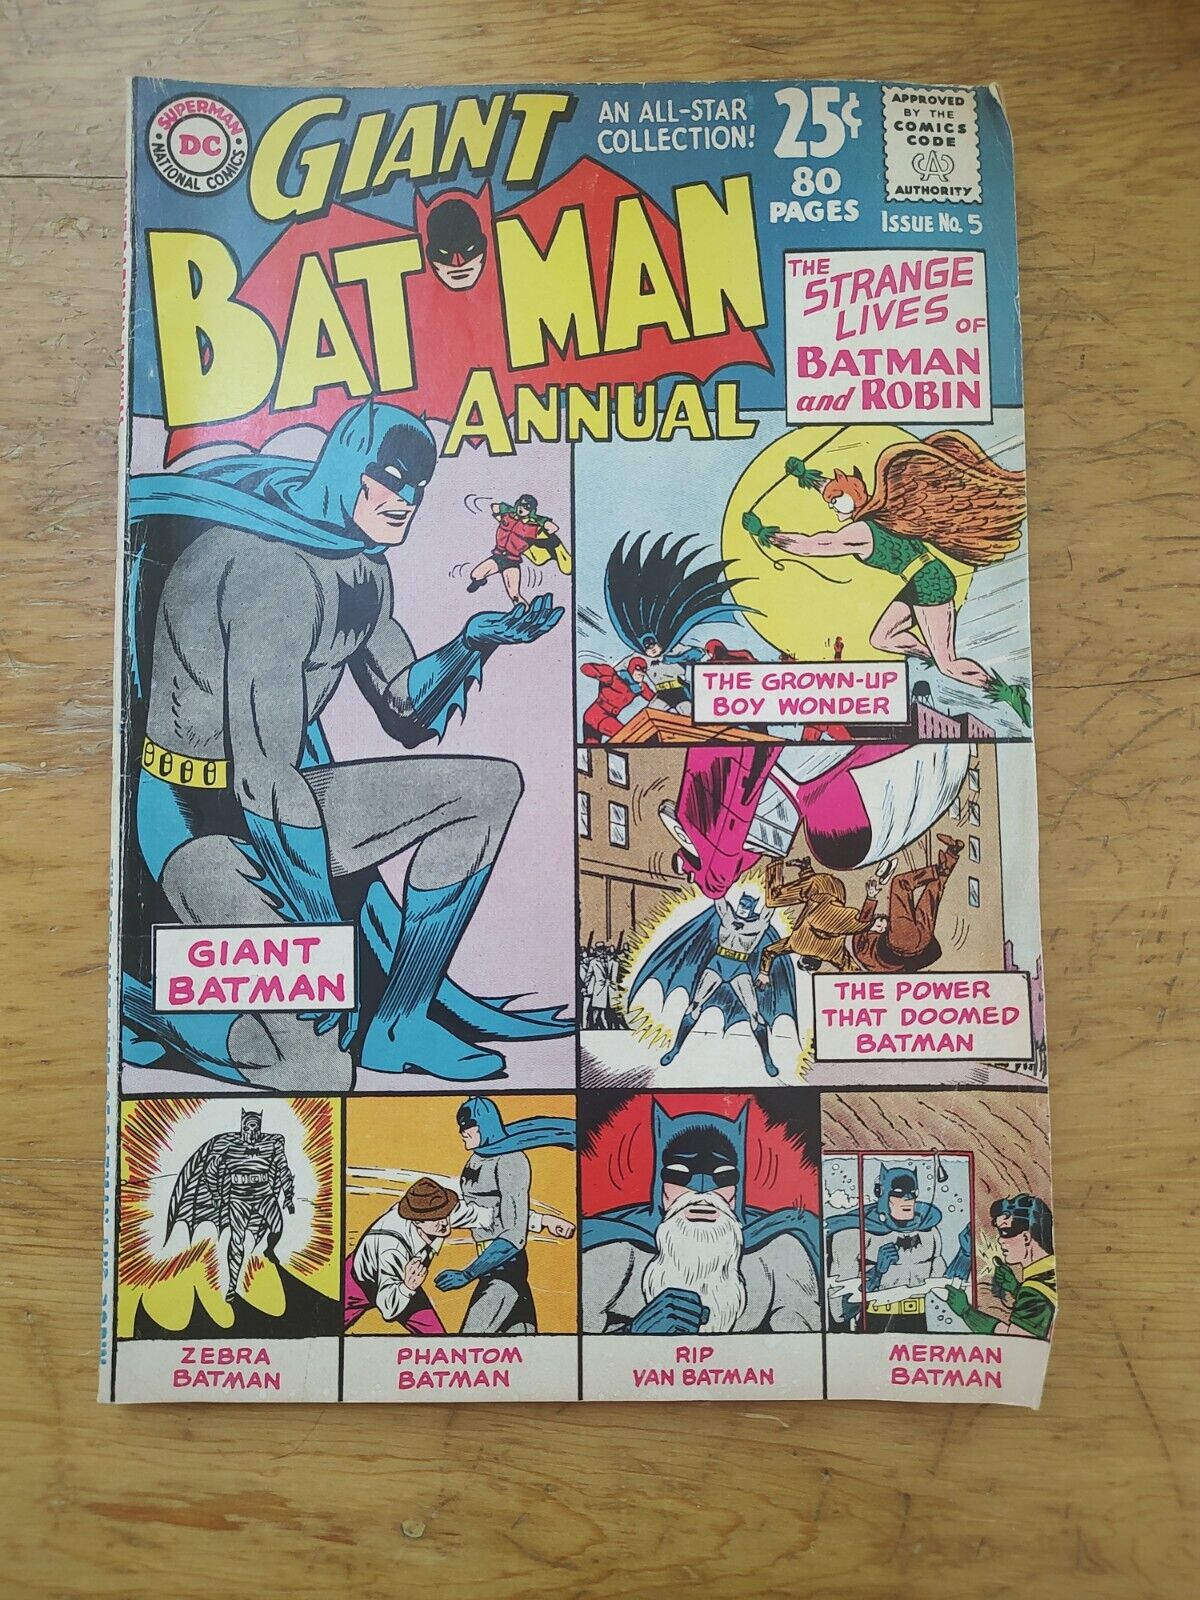 BATMAN ANNUAL #5 [DC 1963] - 80 Pg Giant